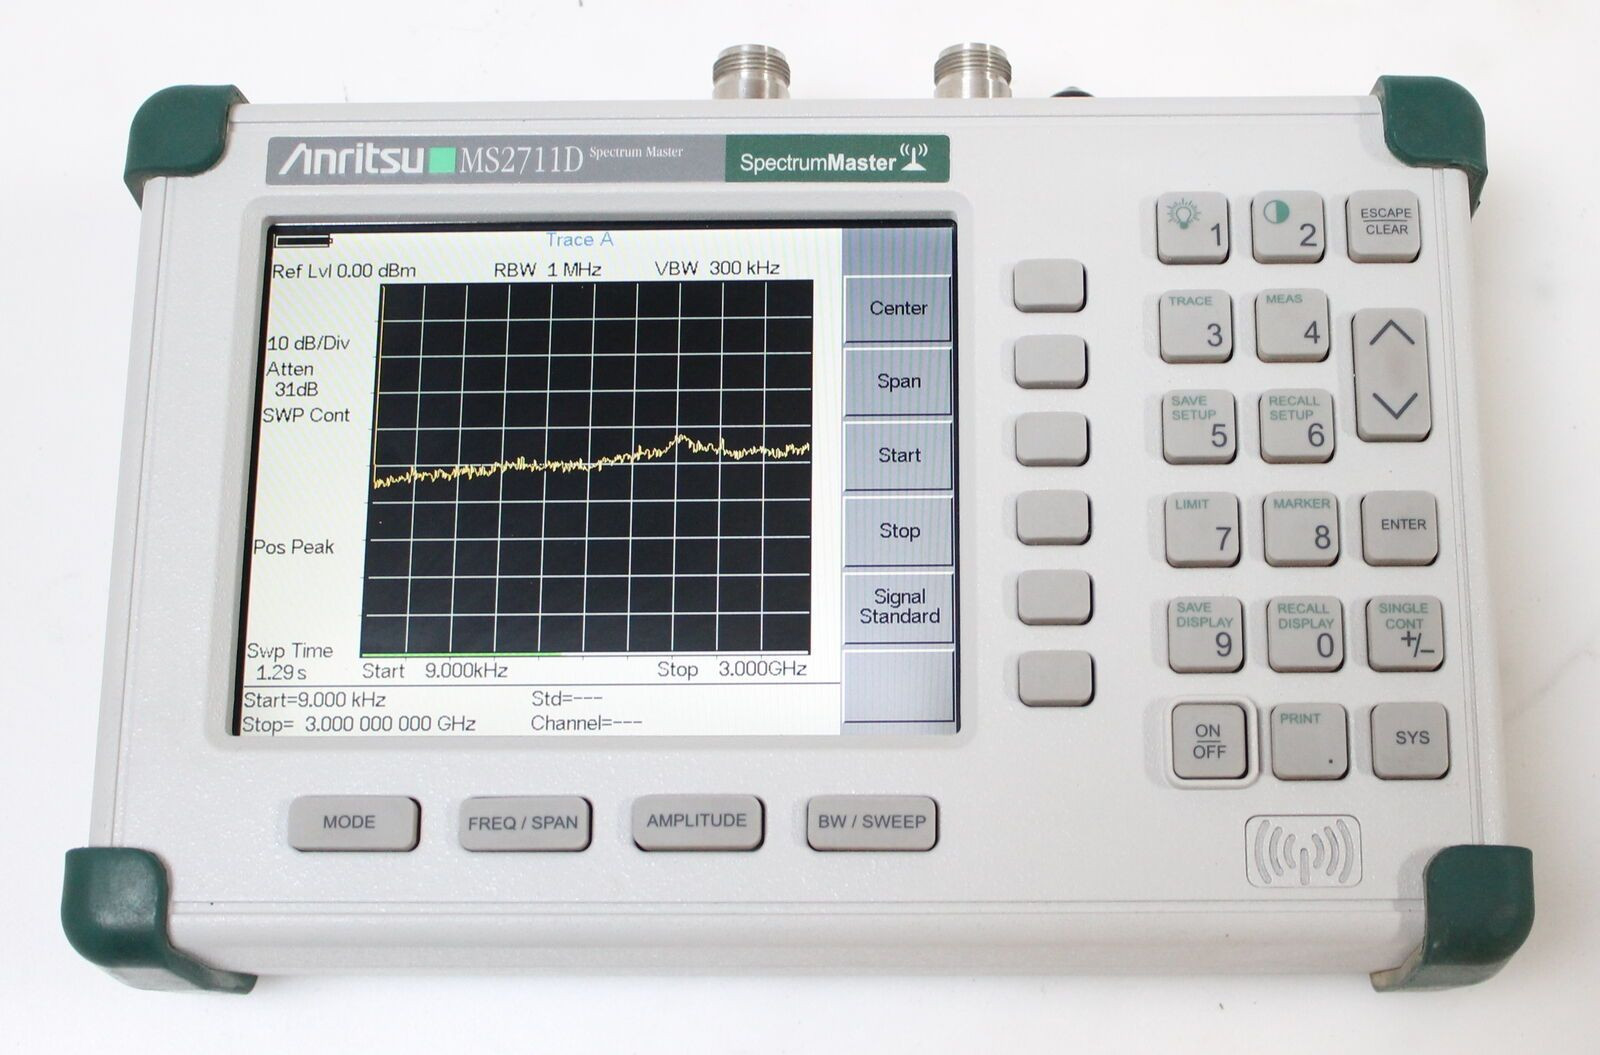 便携式射频频谱分析仪安立MS2711D